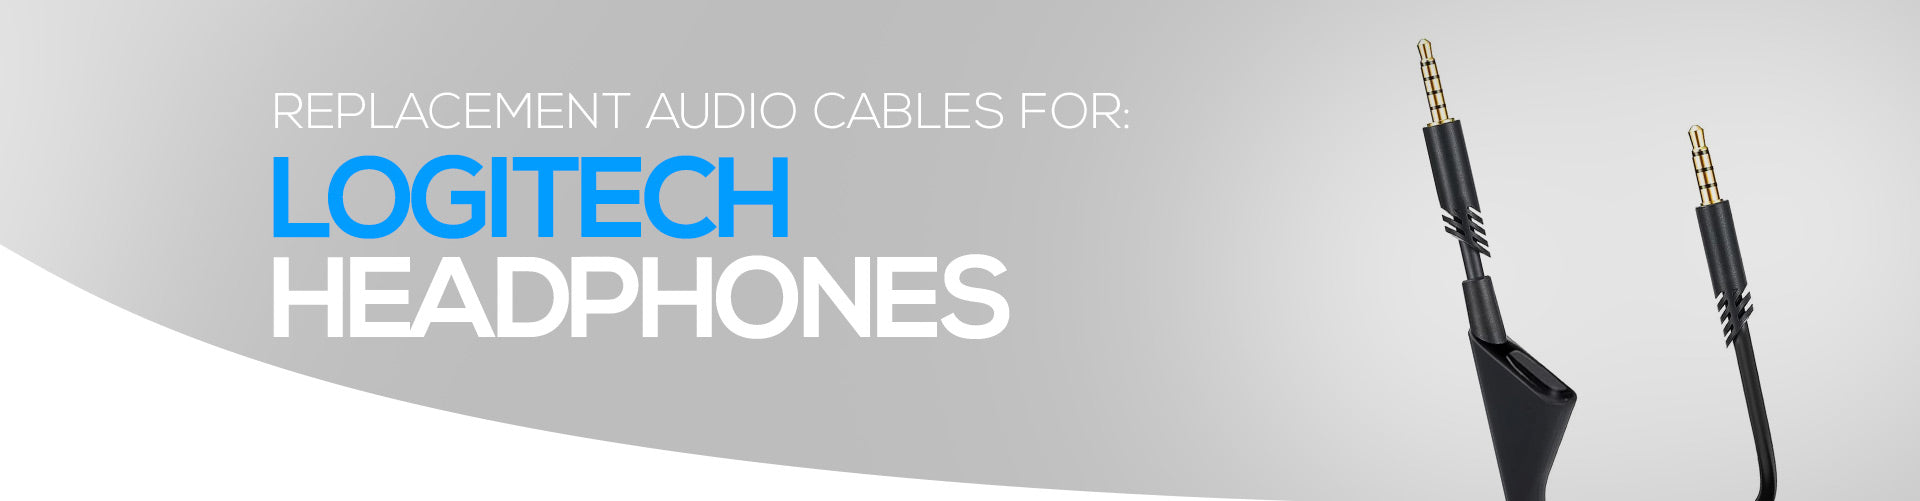 Audio Cables For Logitech Headphones